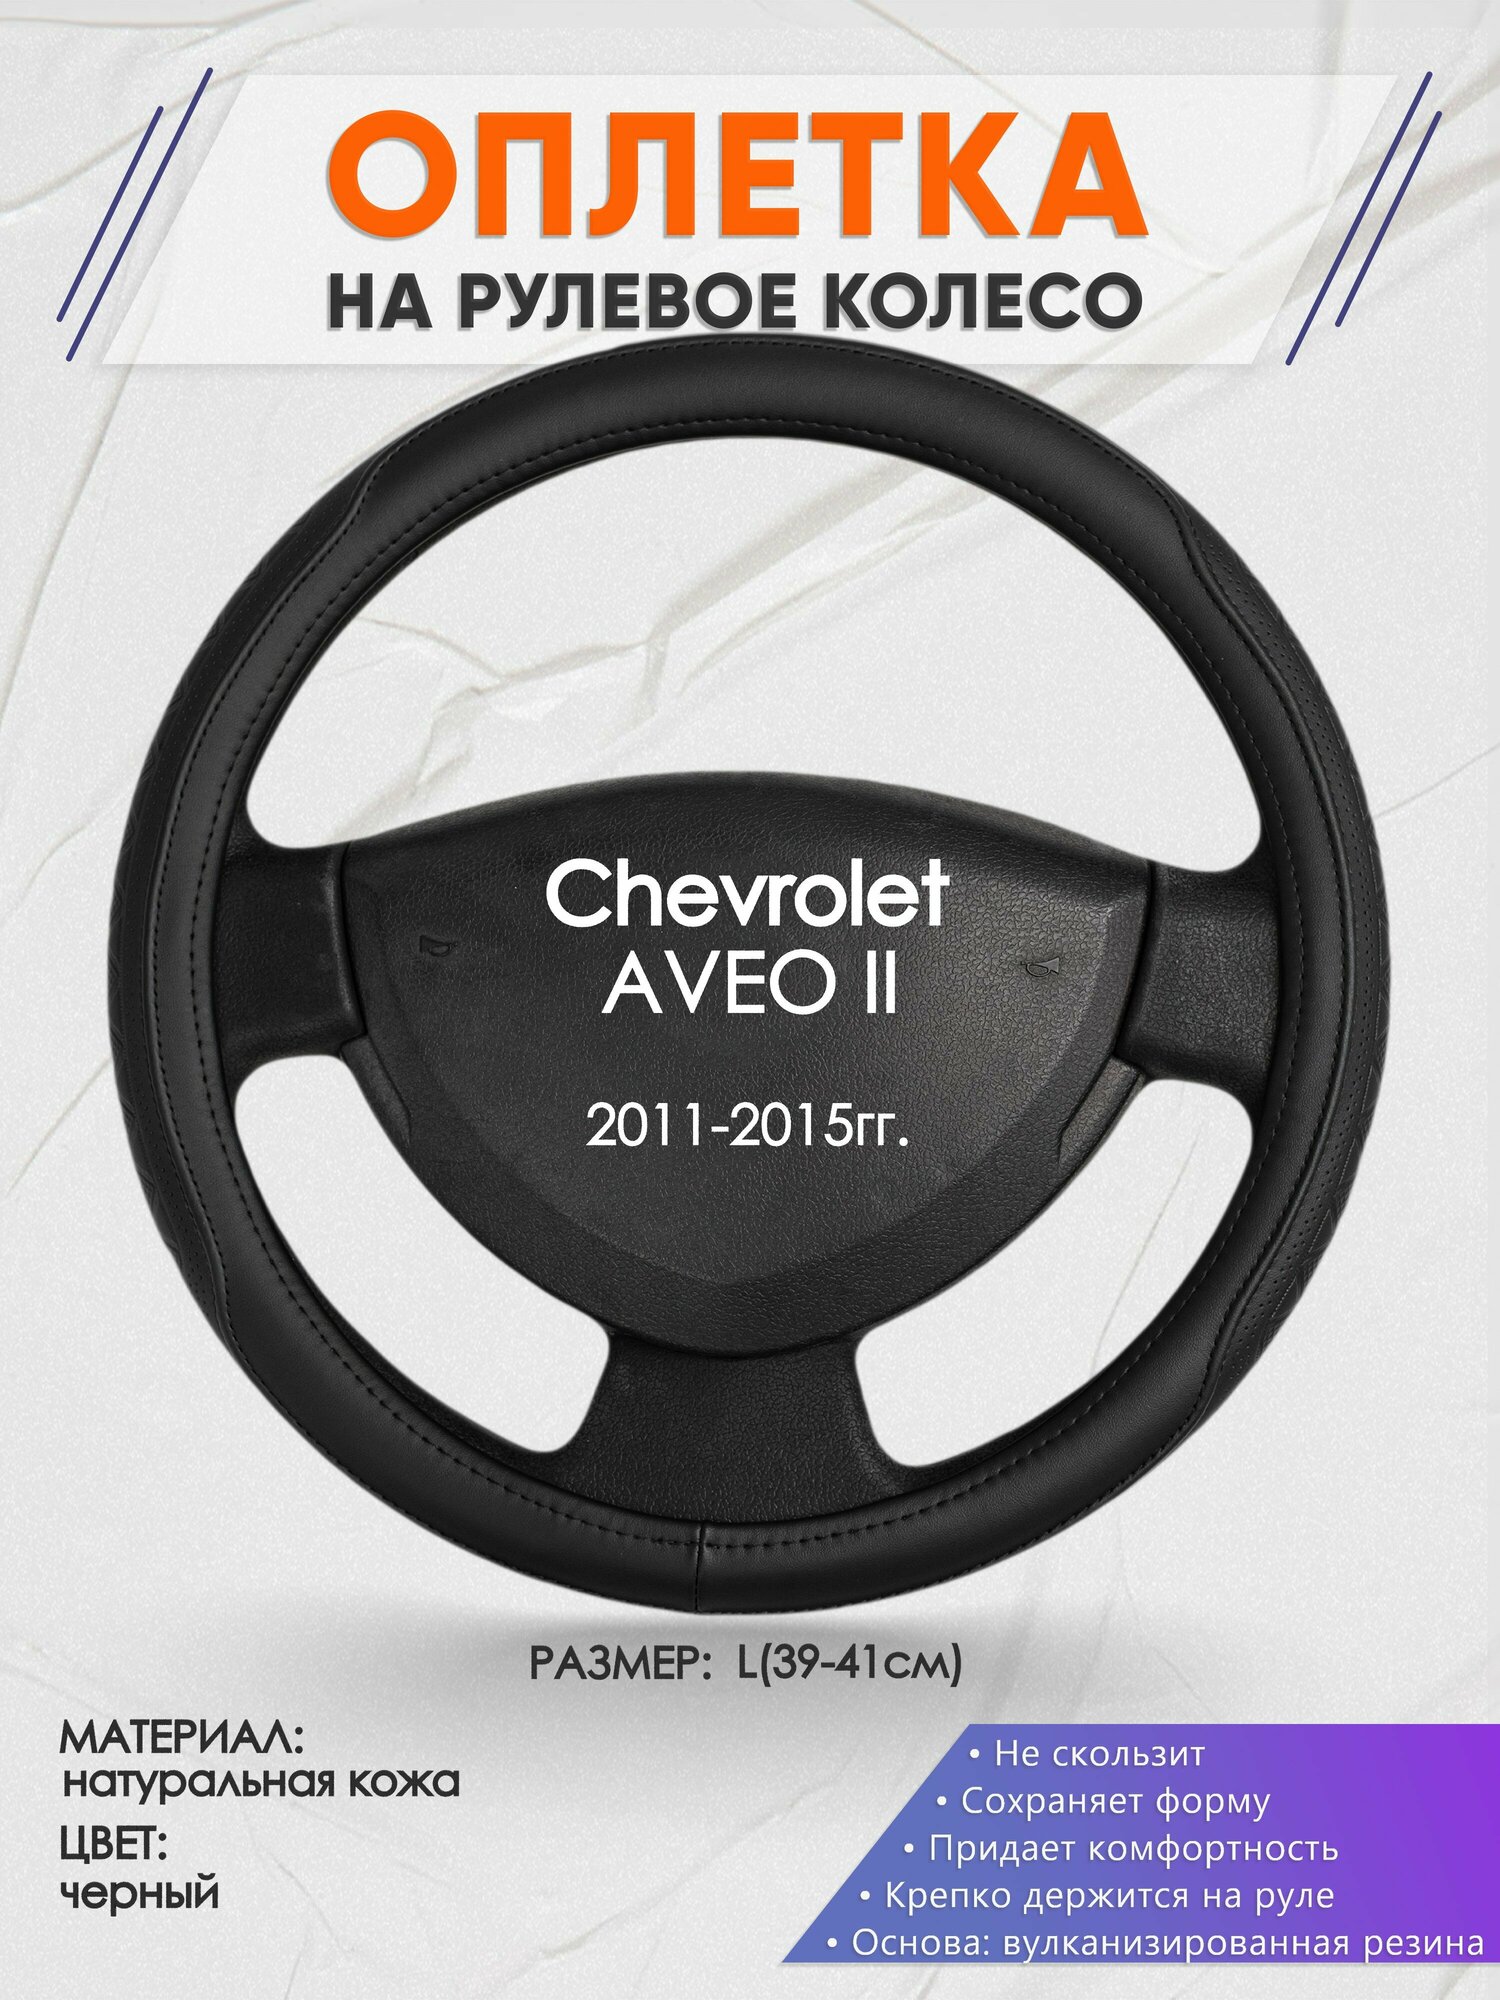 Оплетка на руль для Chevrolet AVEO 2(Шевроле Авео 2) 2011-2015 L(39-41см) Натуральная кожа 90